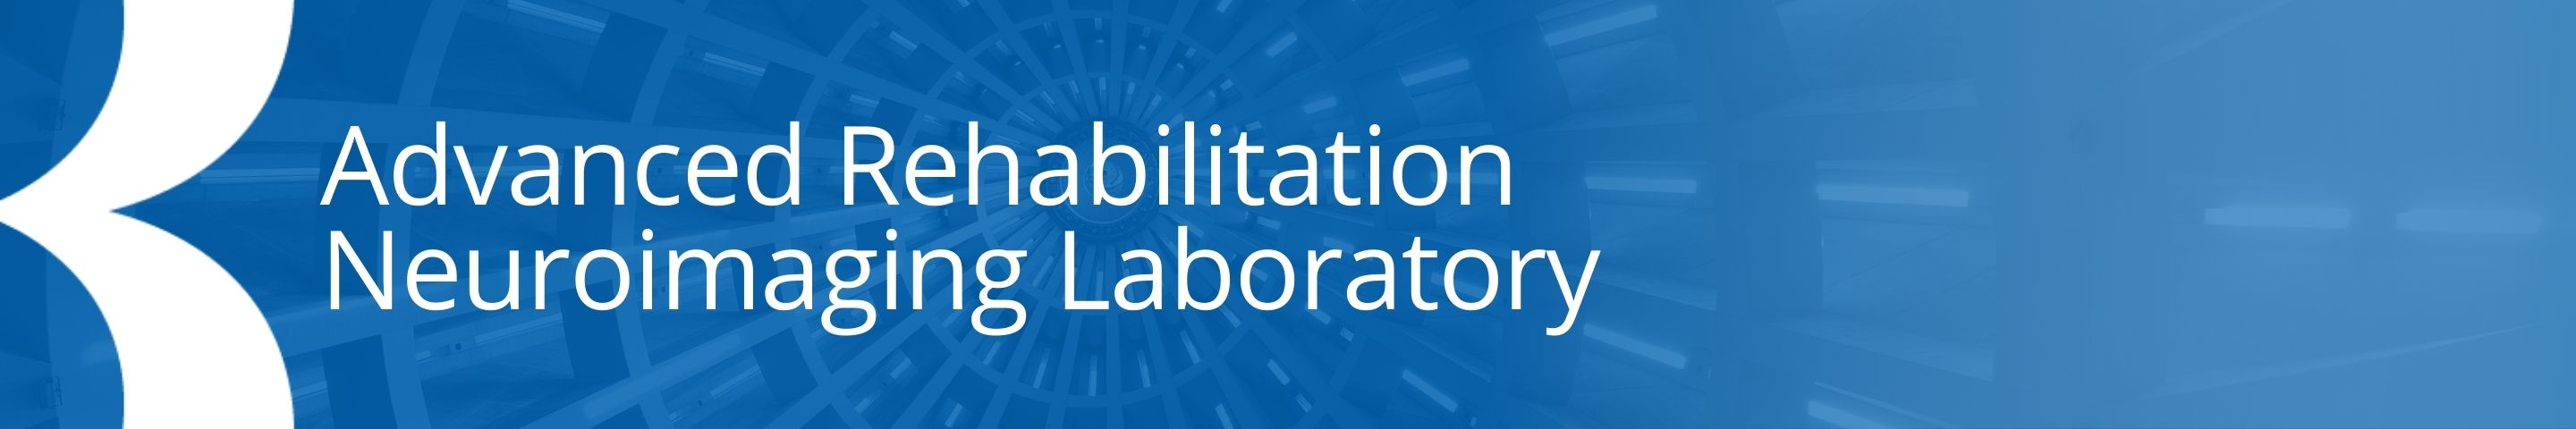 Advanced Rehabilitation Neuroimaging Lab blue banner